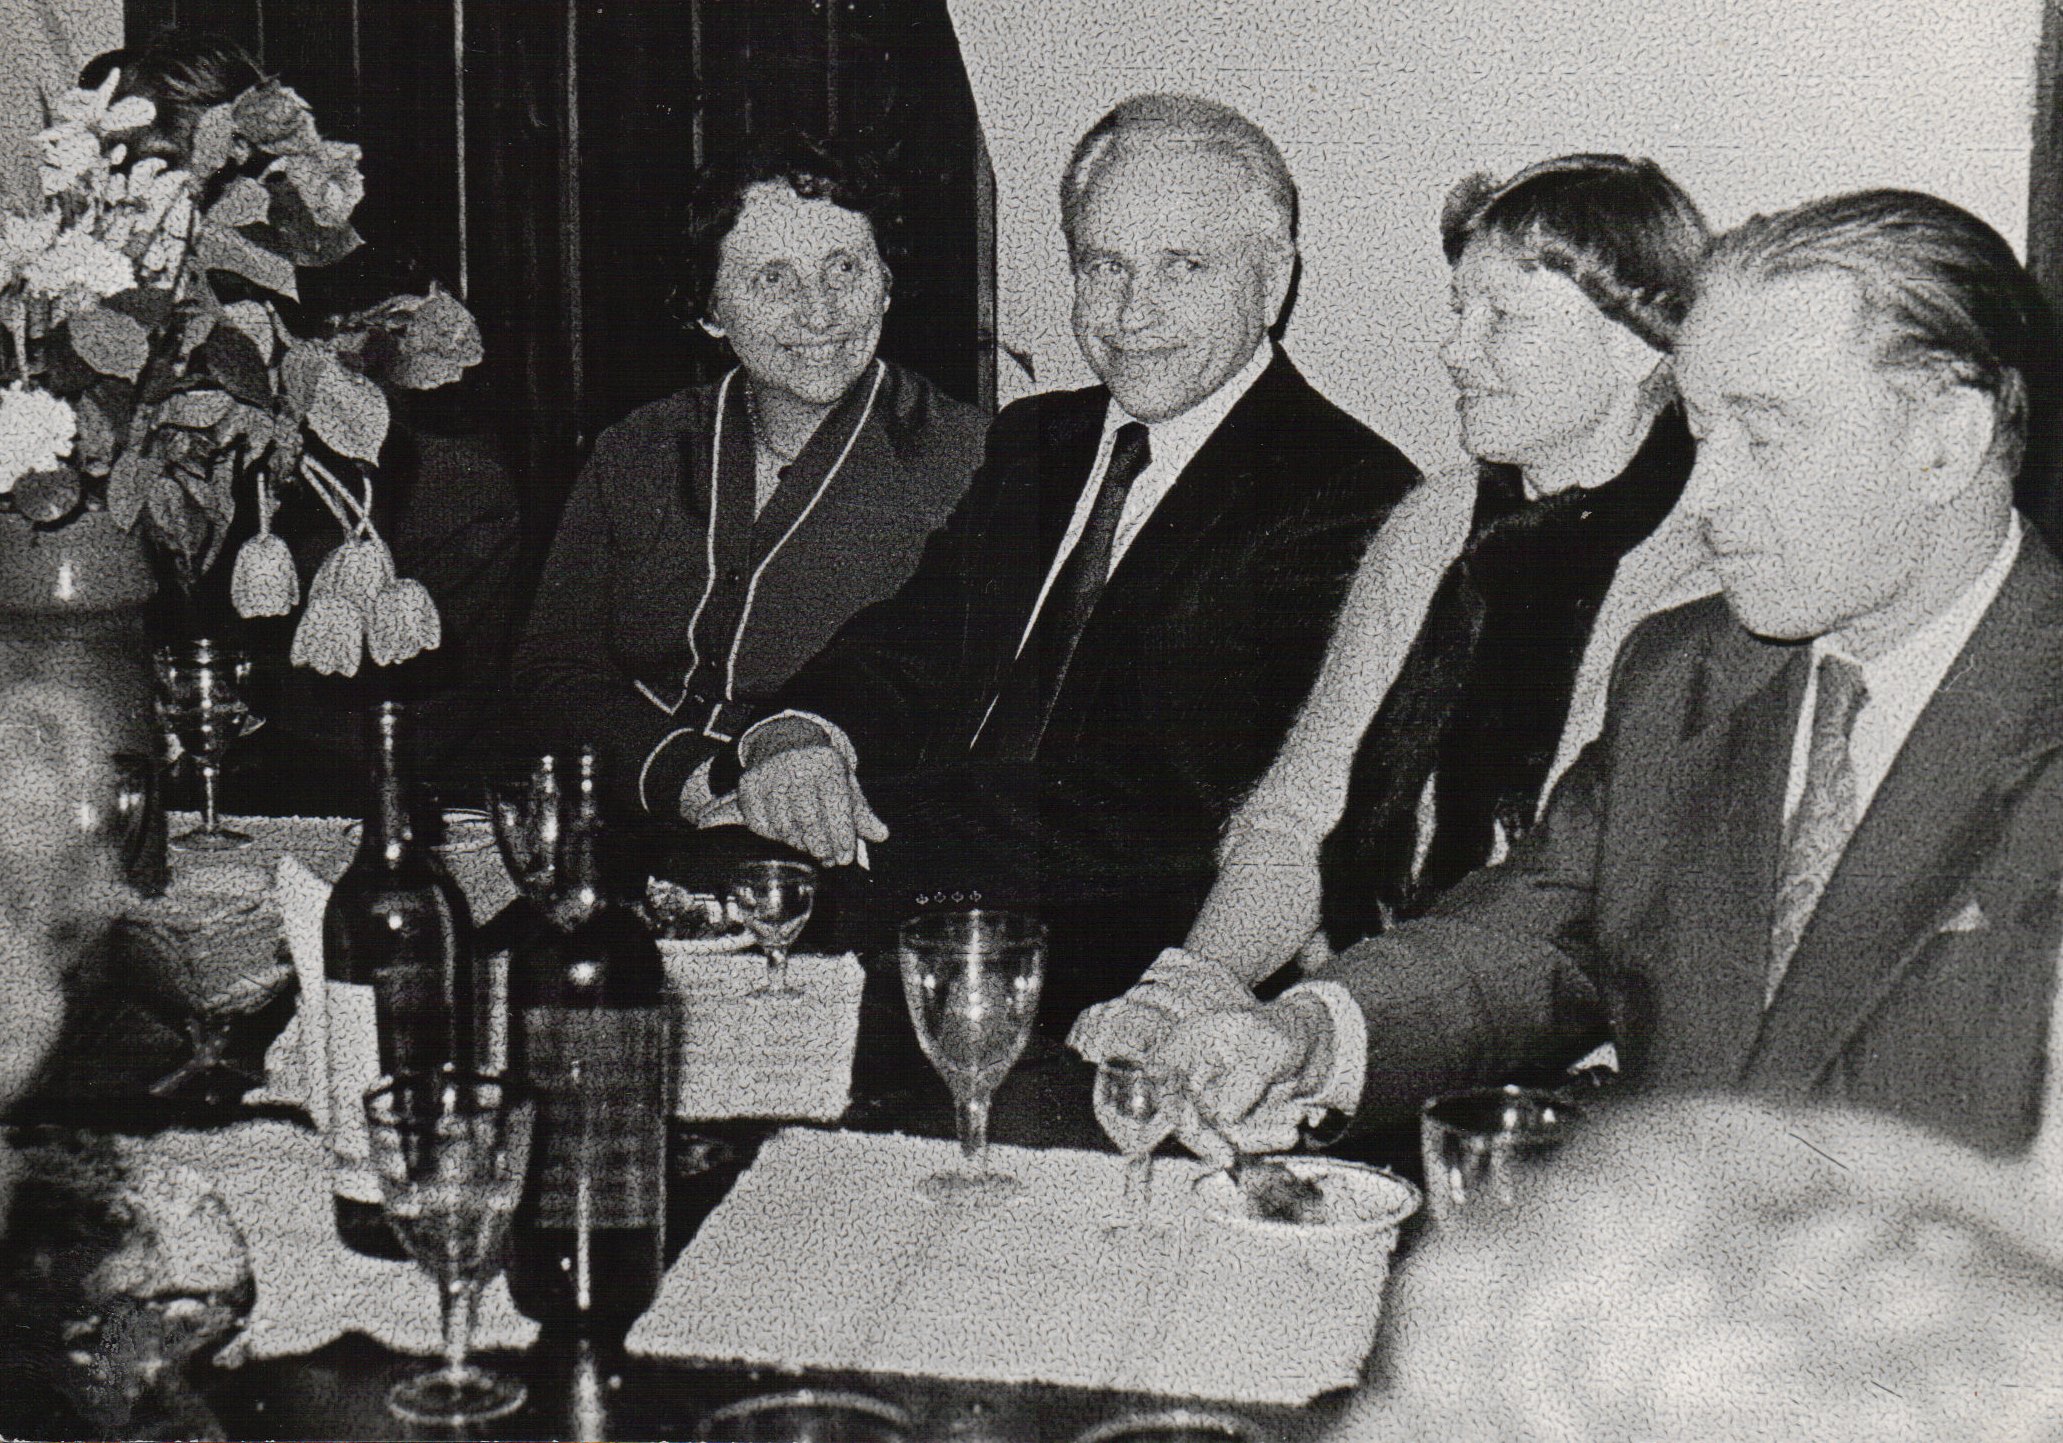 T. Vaičiūnienės kūrybos vakaras Vilniaus menininkų rūmuose 1981 m. kovo 23 d. Iš kairės: V. Zaborskaitė, J. Lankutis, J. Lankutienė, J. Būtėnas. Fotografė O. Pajėdaitė.